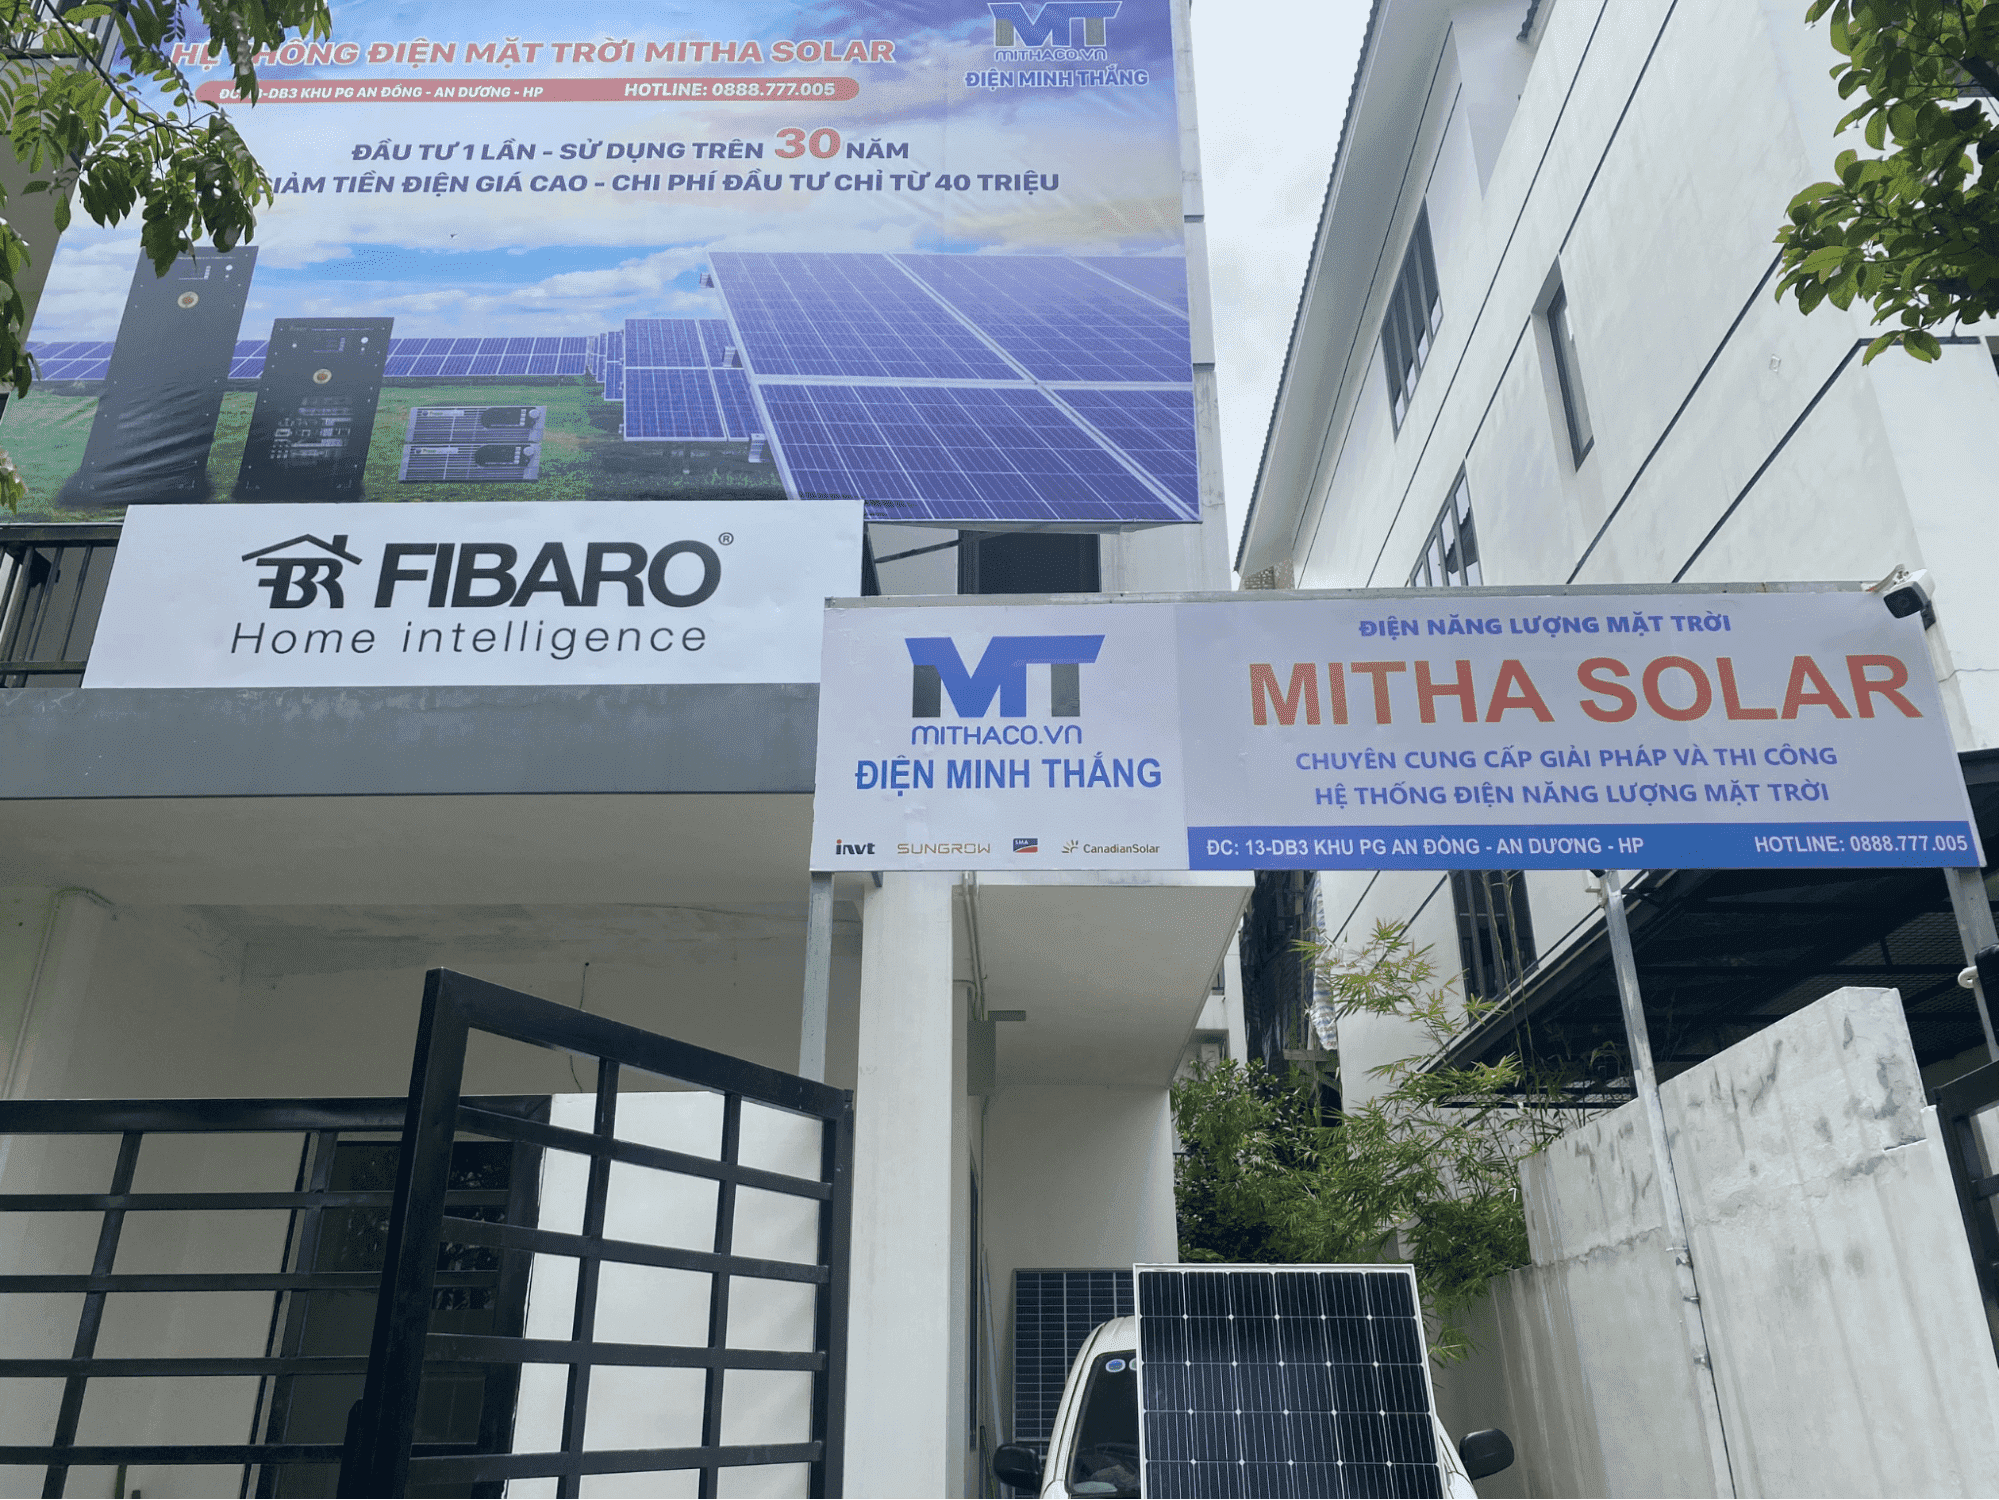 Mitha Solar - Nhà Phân Phối Thiết Bị Đèn Năng Lượng Mặt Trời Uy Tín tại Hải Phòng